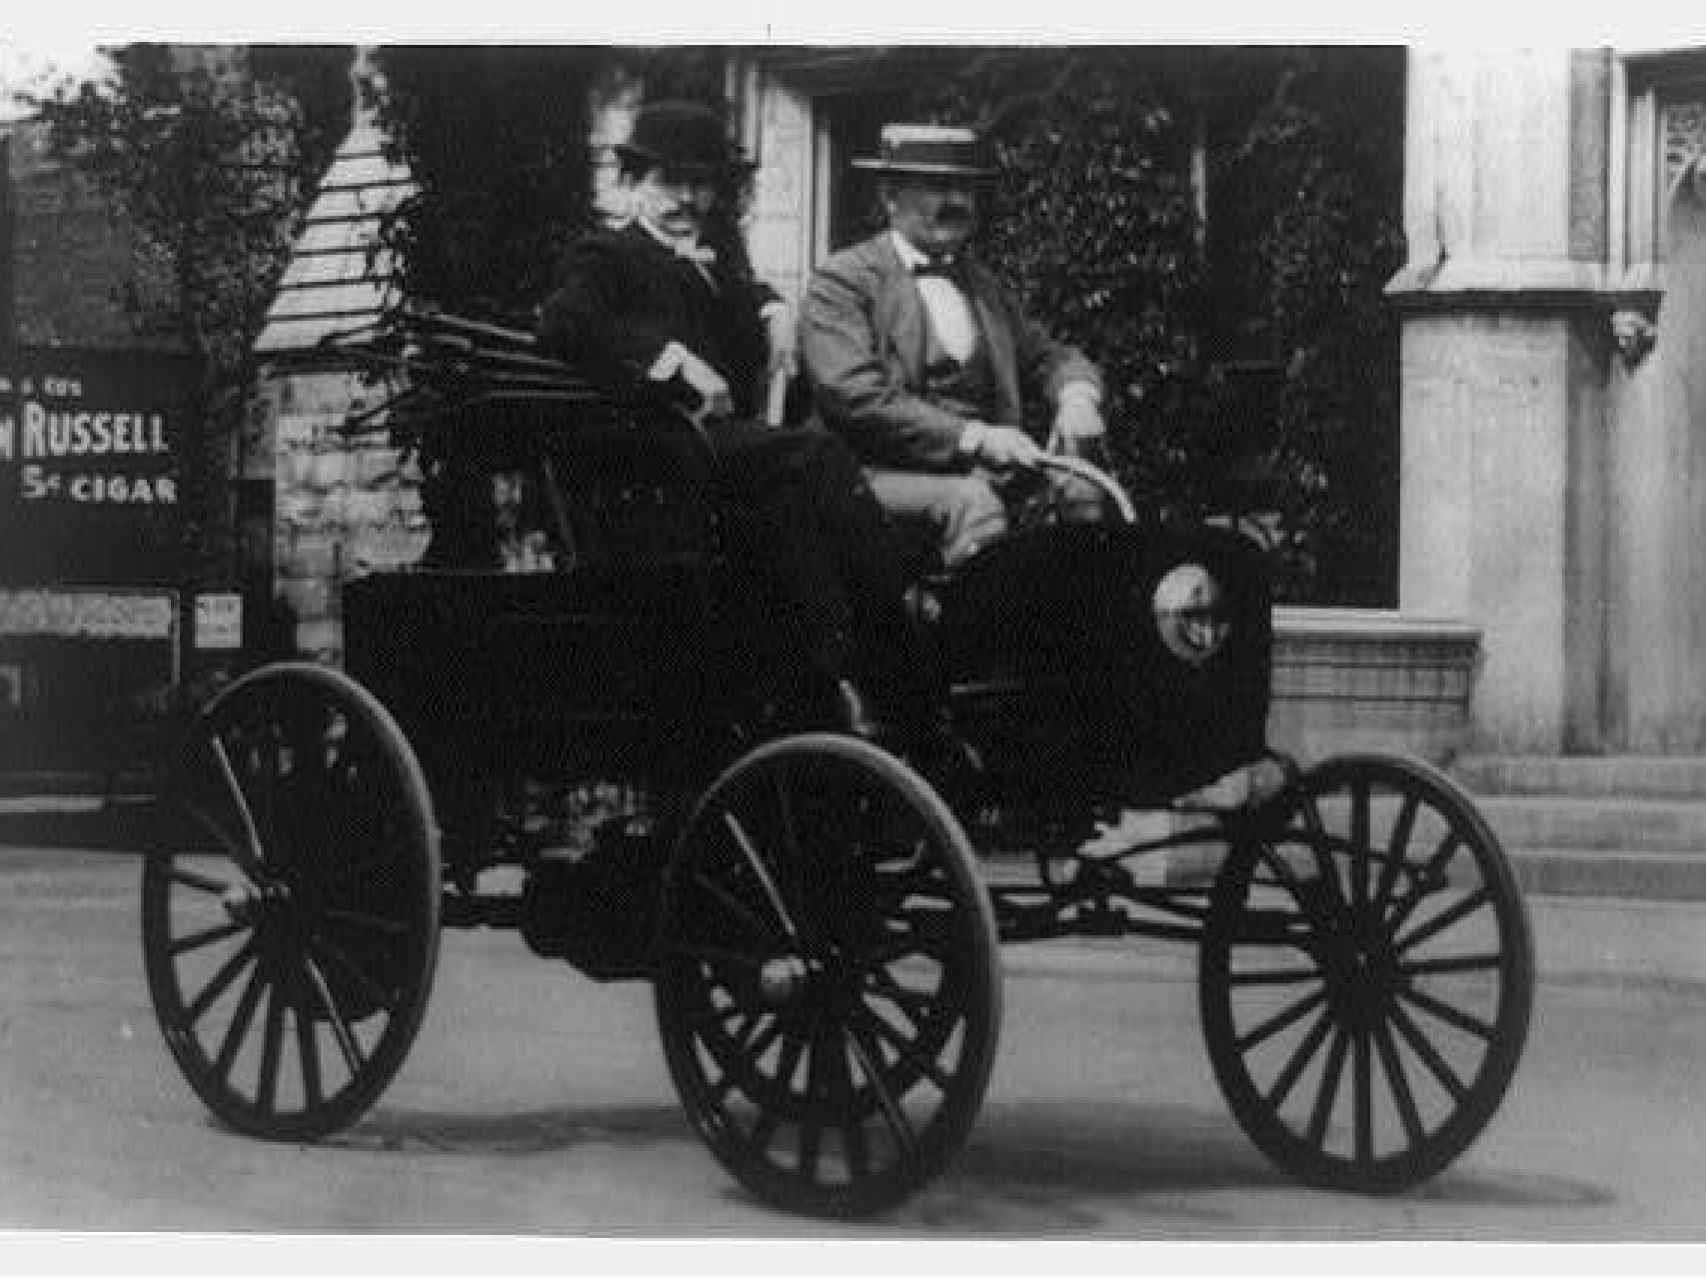 Dos hombres circulando en un vehículo americano de la década de 1890.